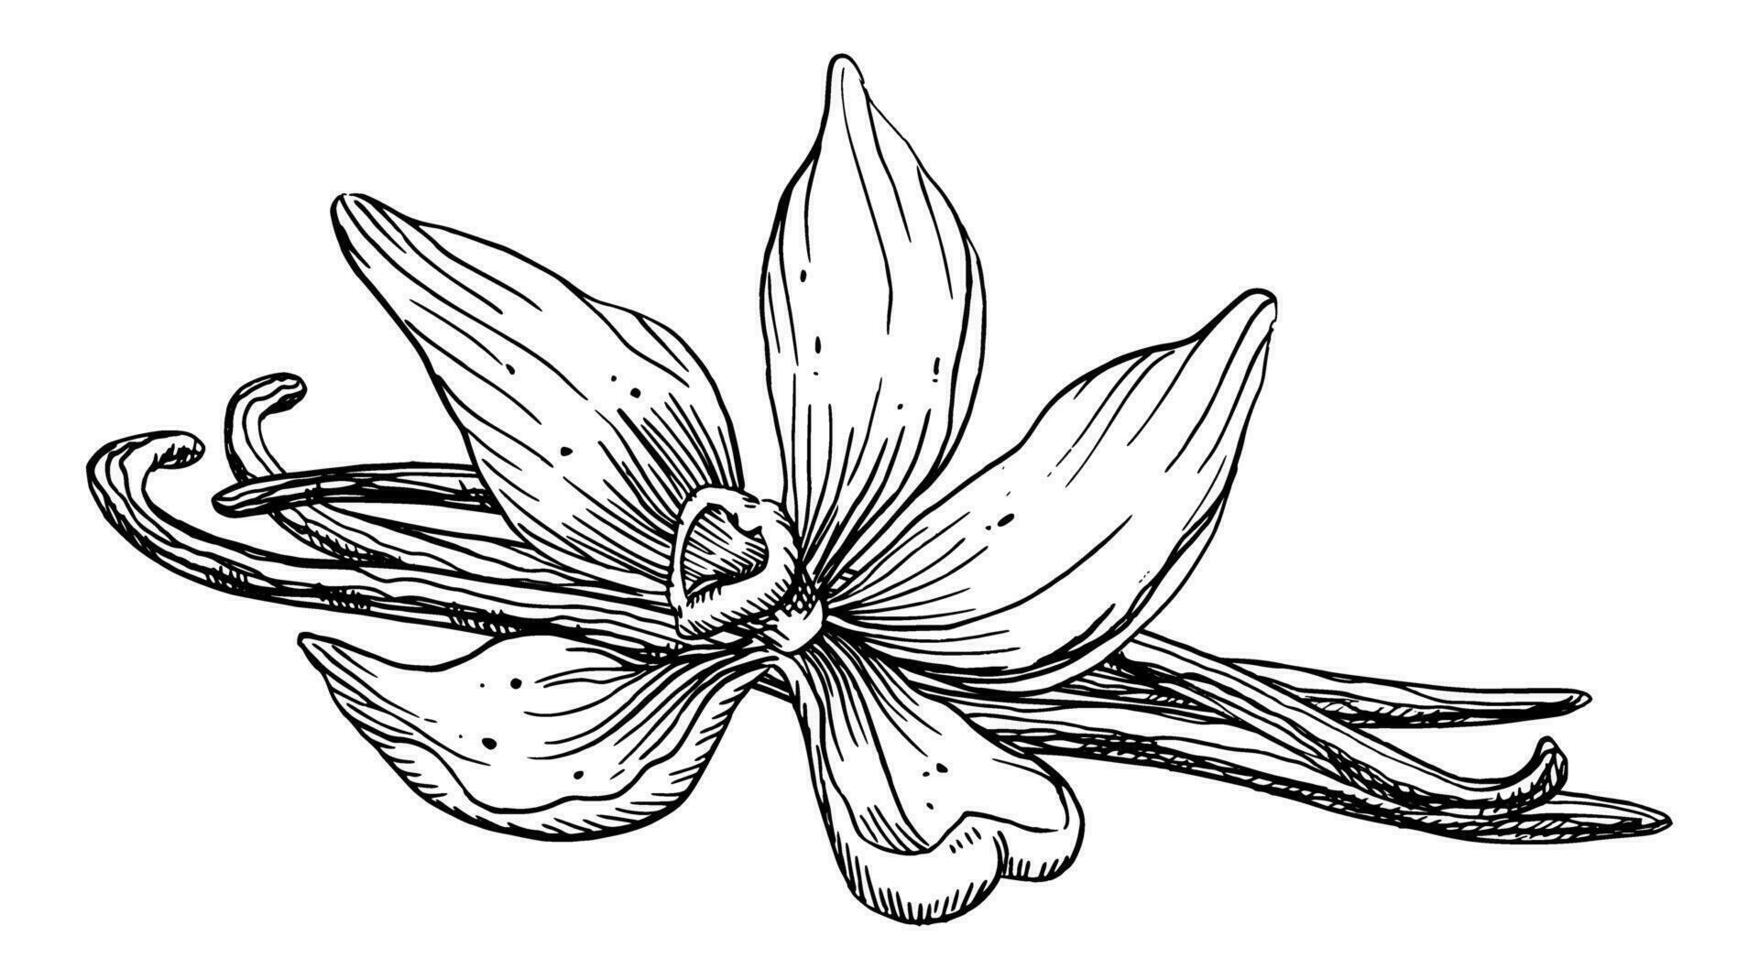 Vanille Blume mit Stöcke. Vektor Hand gezeichnet Illustration von Orchidee Blume und Schoten auf isoliert Hintergrund. schwarz Linie Kunst Zeichnung von würzen zum Kochen oder Aroma Öle. skizzieren von Kräuter- Zutat